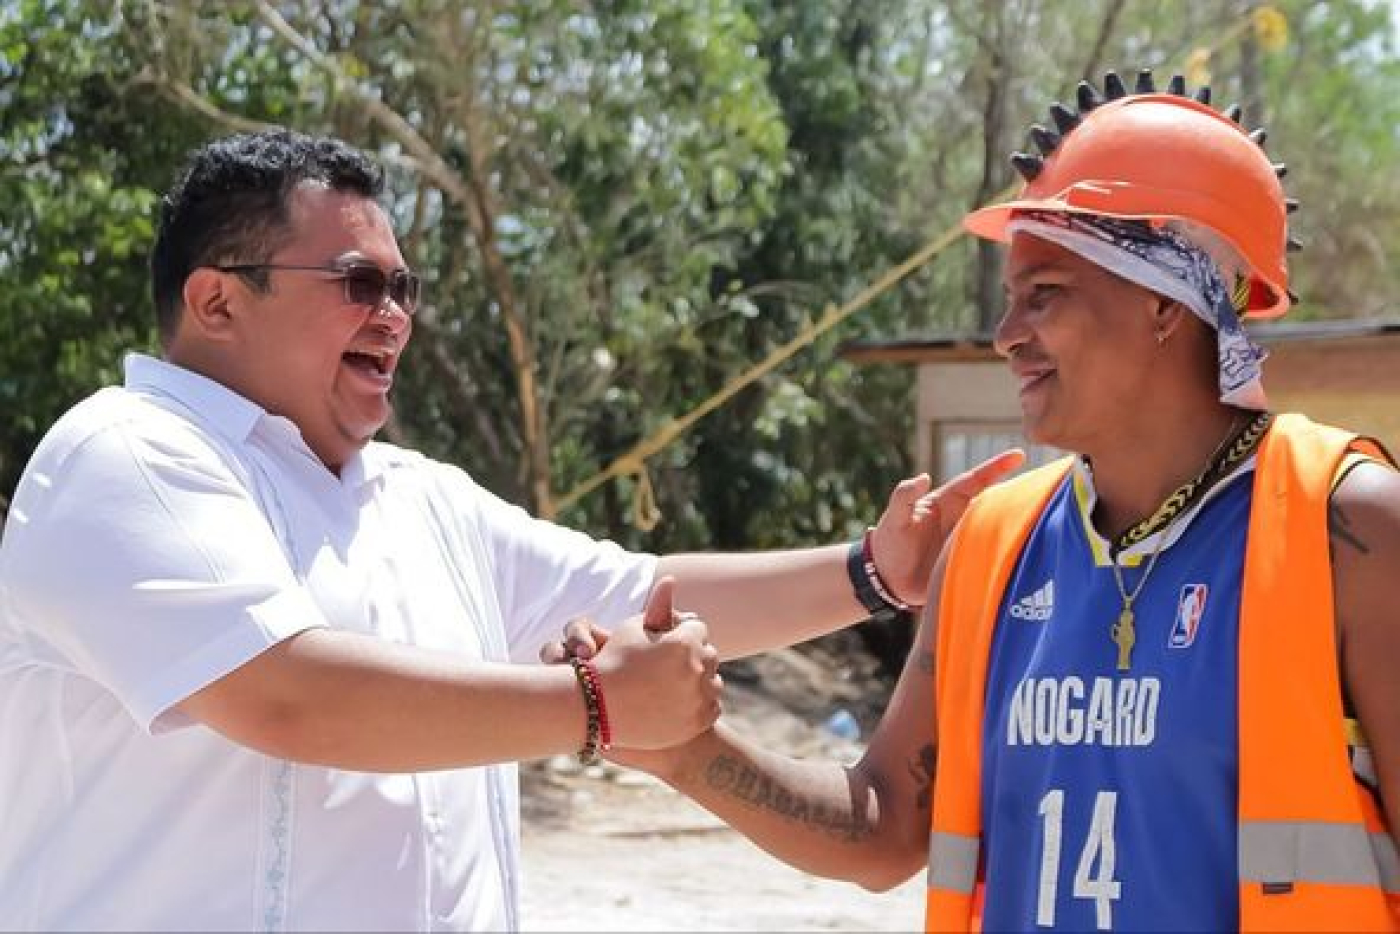 Reconoce Chacón a trabajadores de la construcción que contribuyen al crecimiento de Cozumel